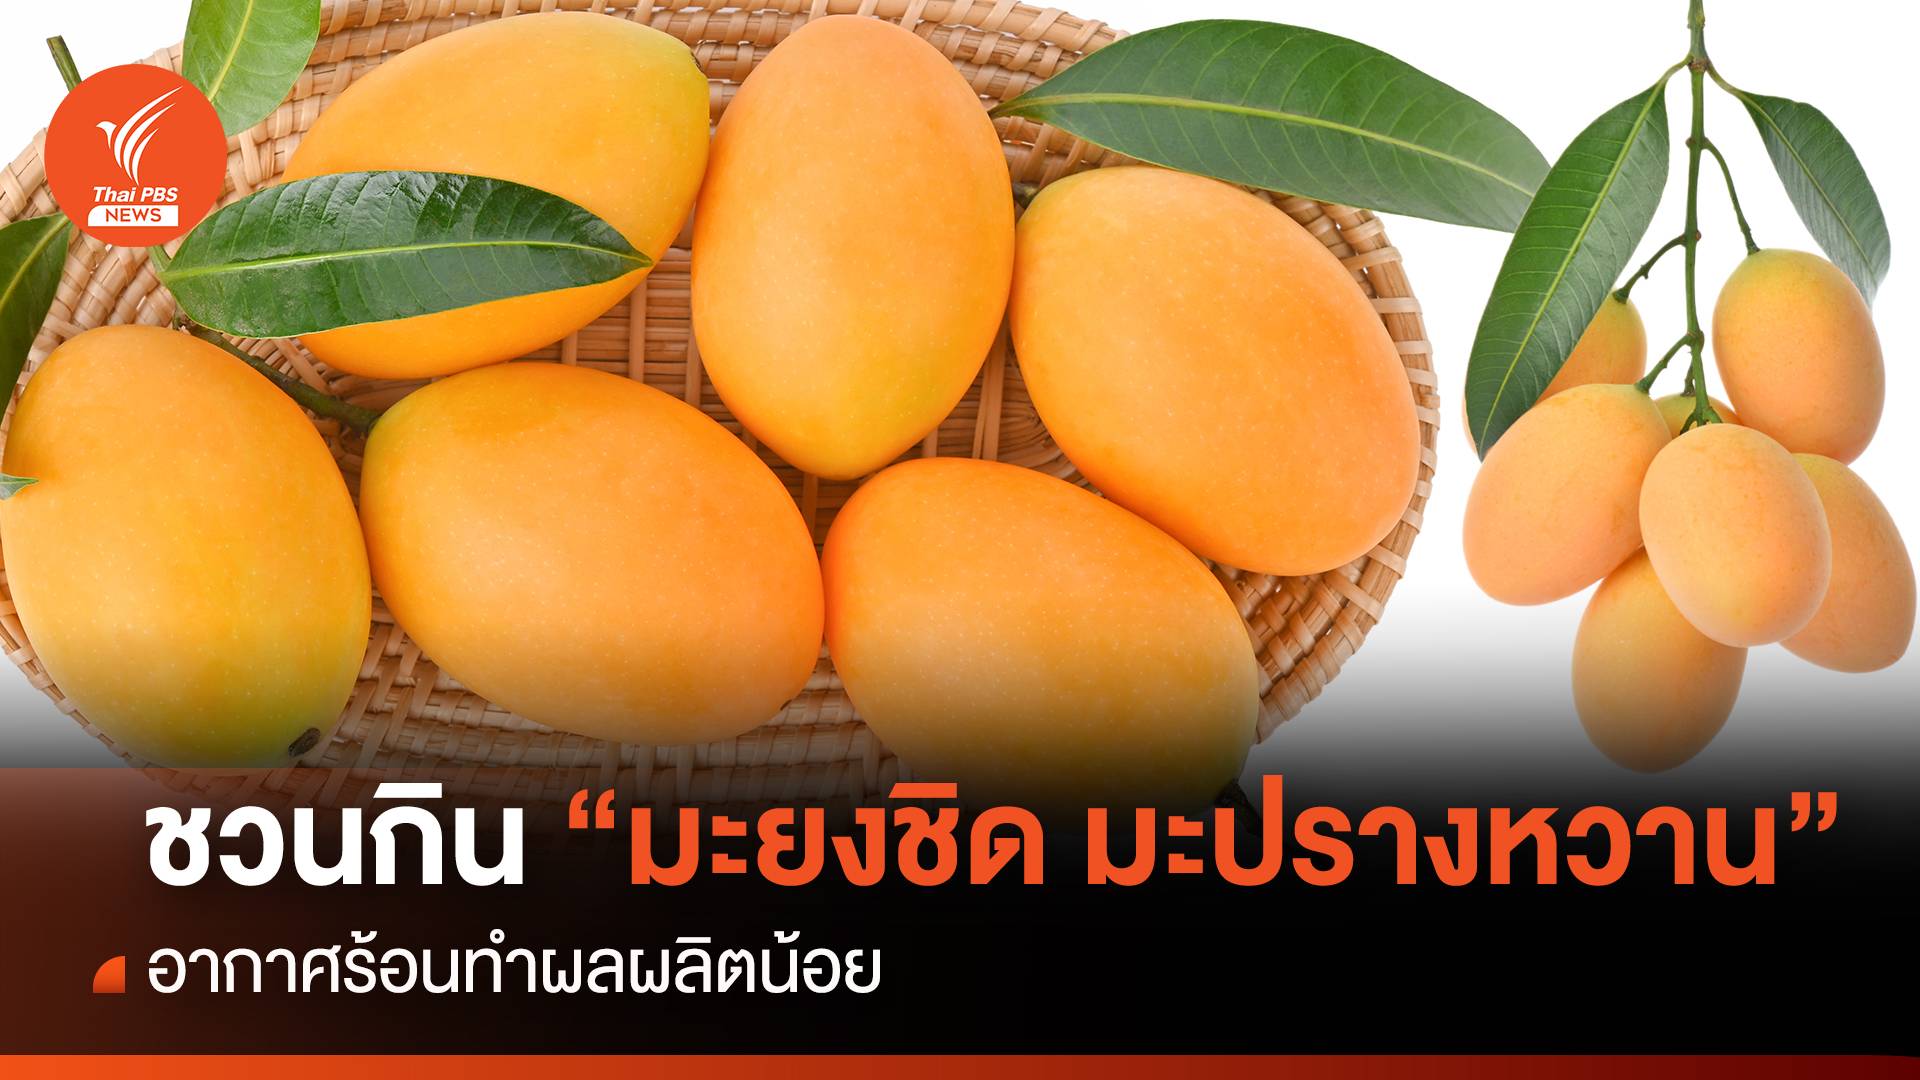  ชวนคนไทยกิน “มะยงชิด มะปรางหวาน” อากาศร้อนทำผลผลิตน้อย